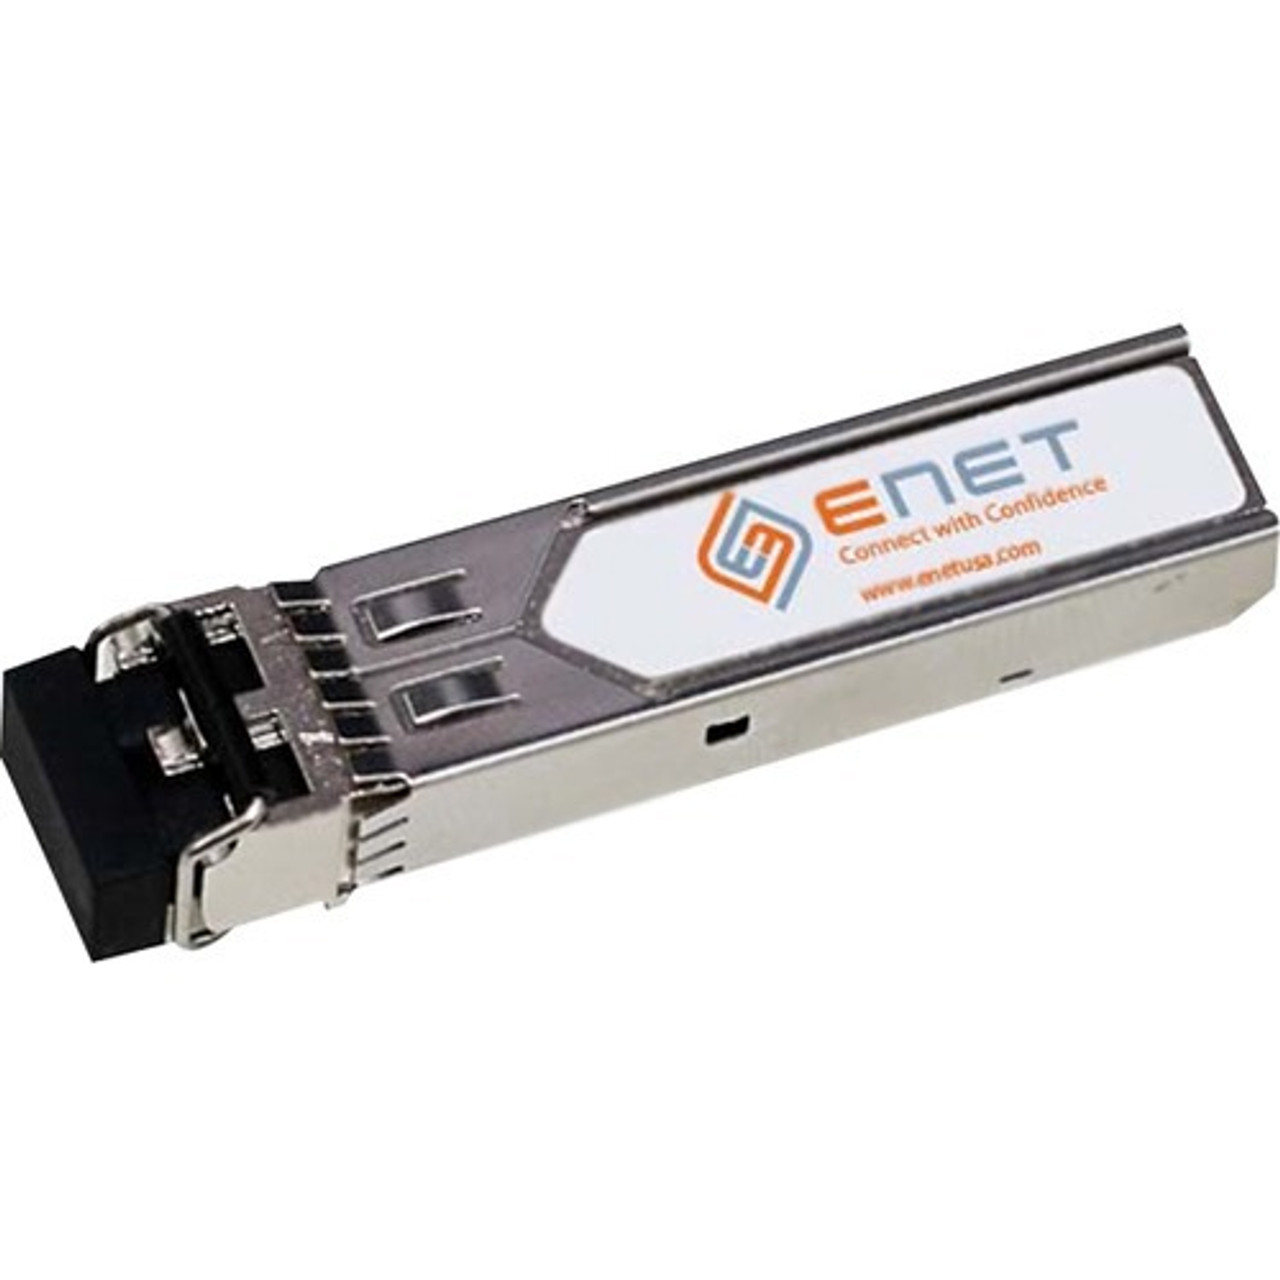 ENET 01-SSC-9791-ENT